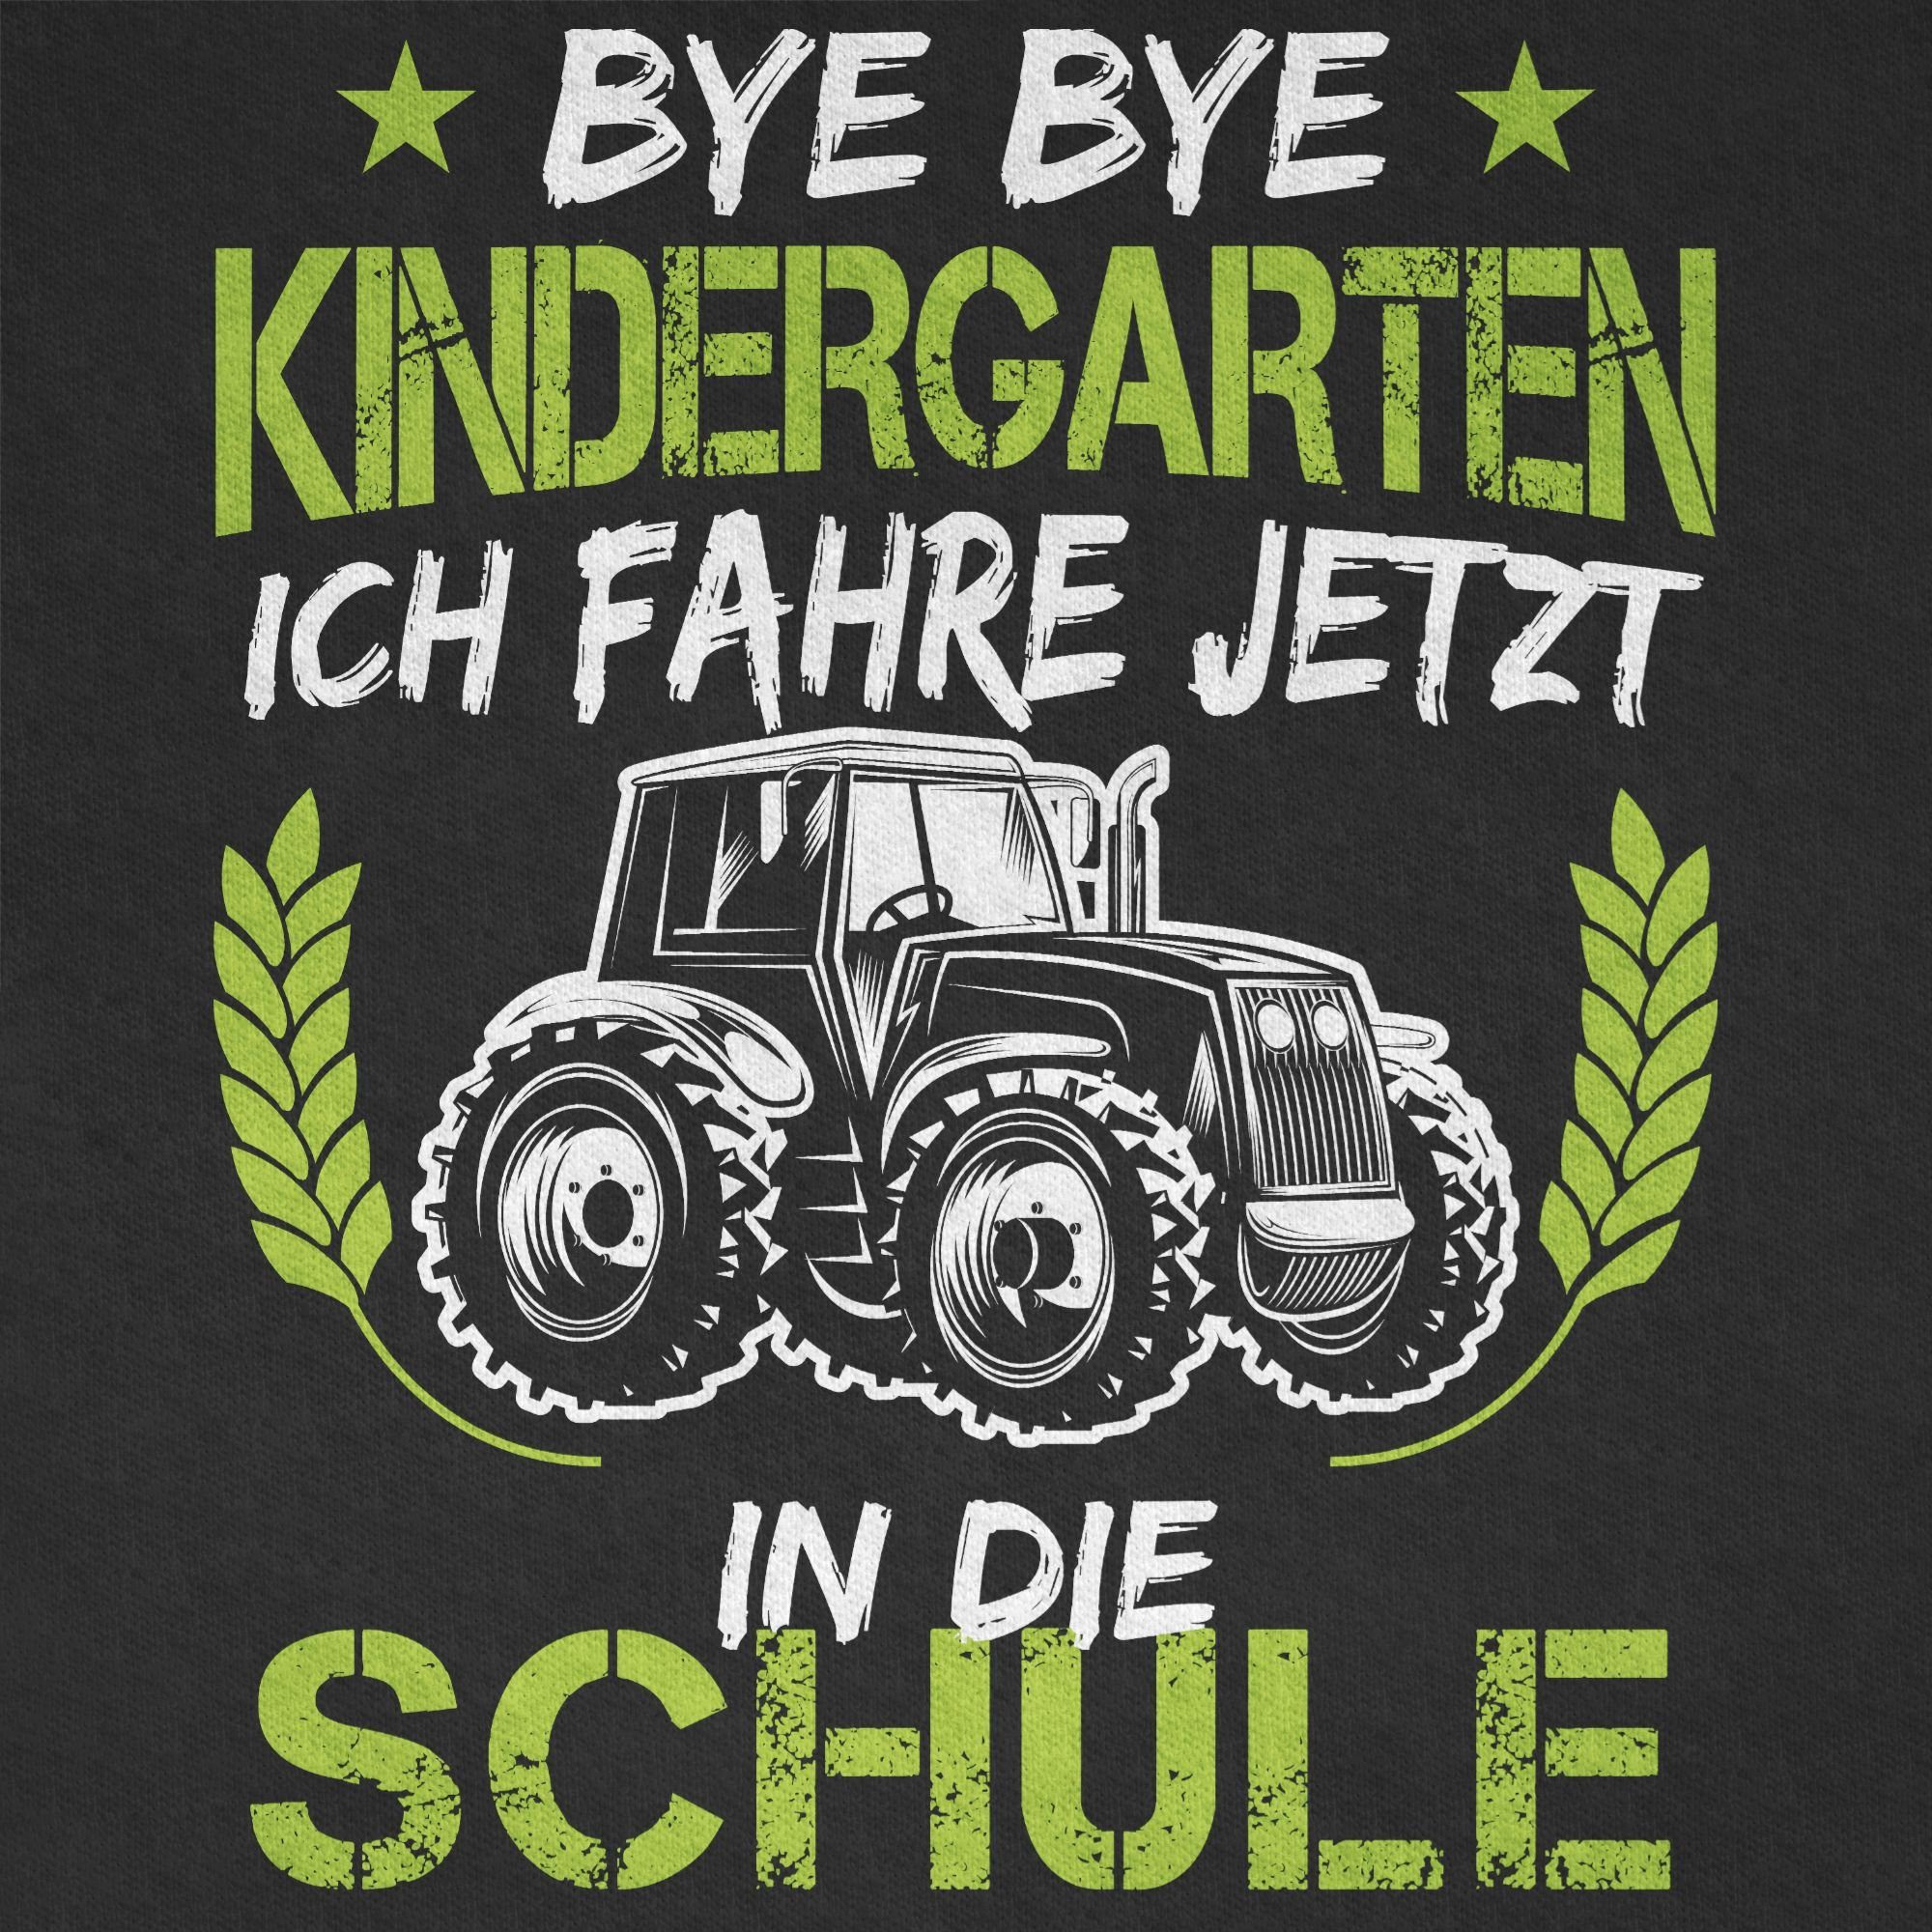 T-Shirt Einschulung jetzt Junge Bye in fahre Traktor Schwarz Bye Schule 02 Kindergarten die ich Grün Shirtracer Weiß Schulanfang Geschenke